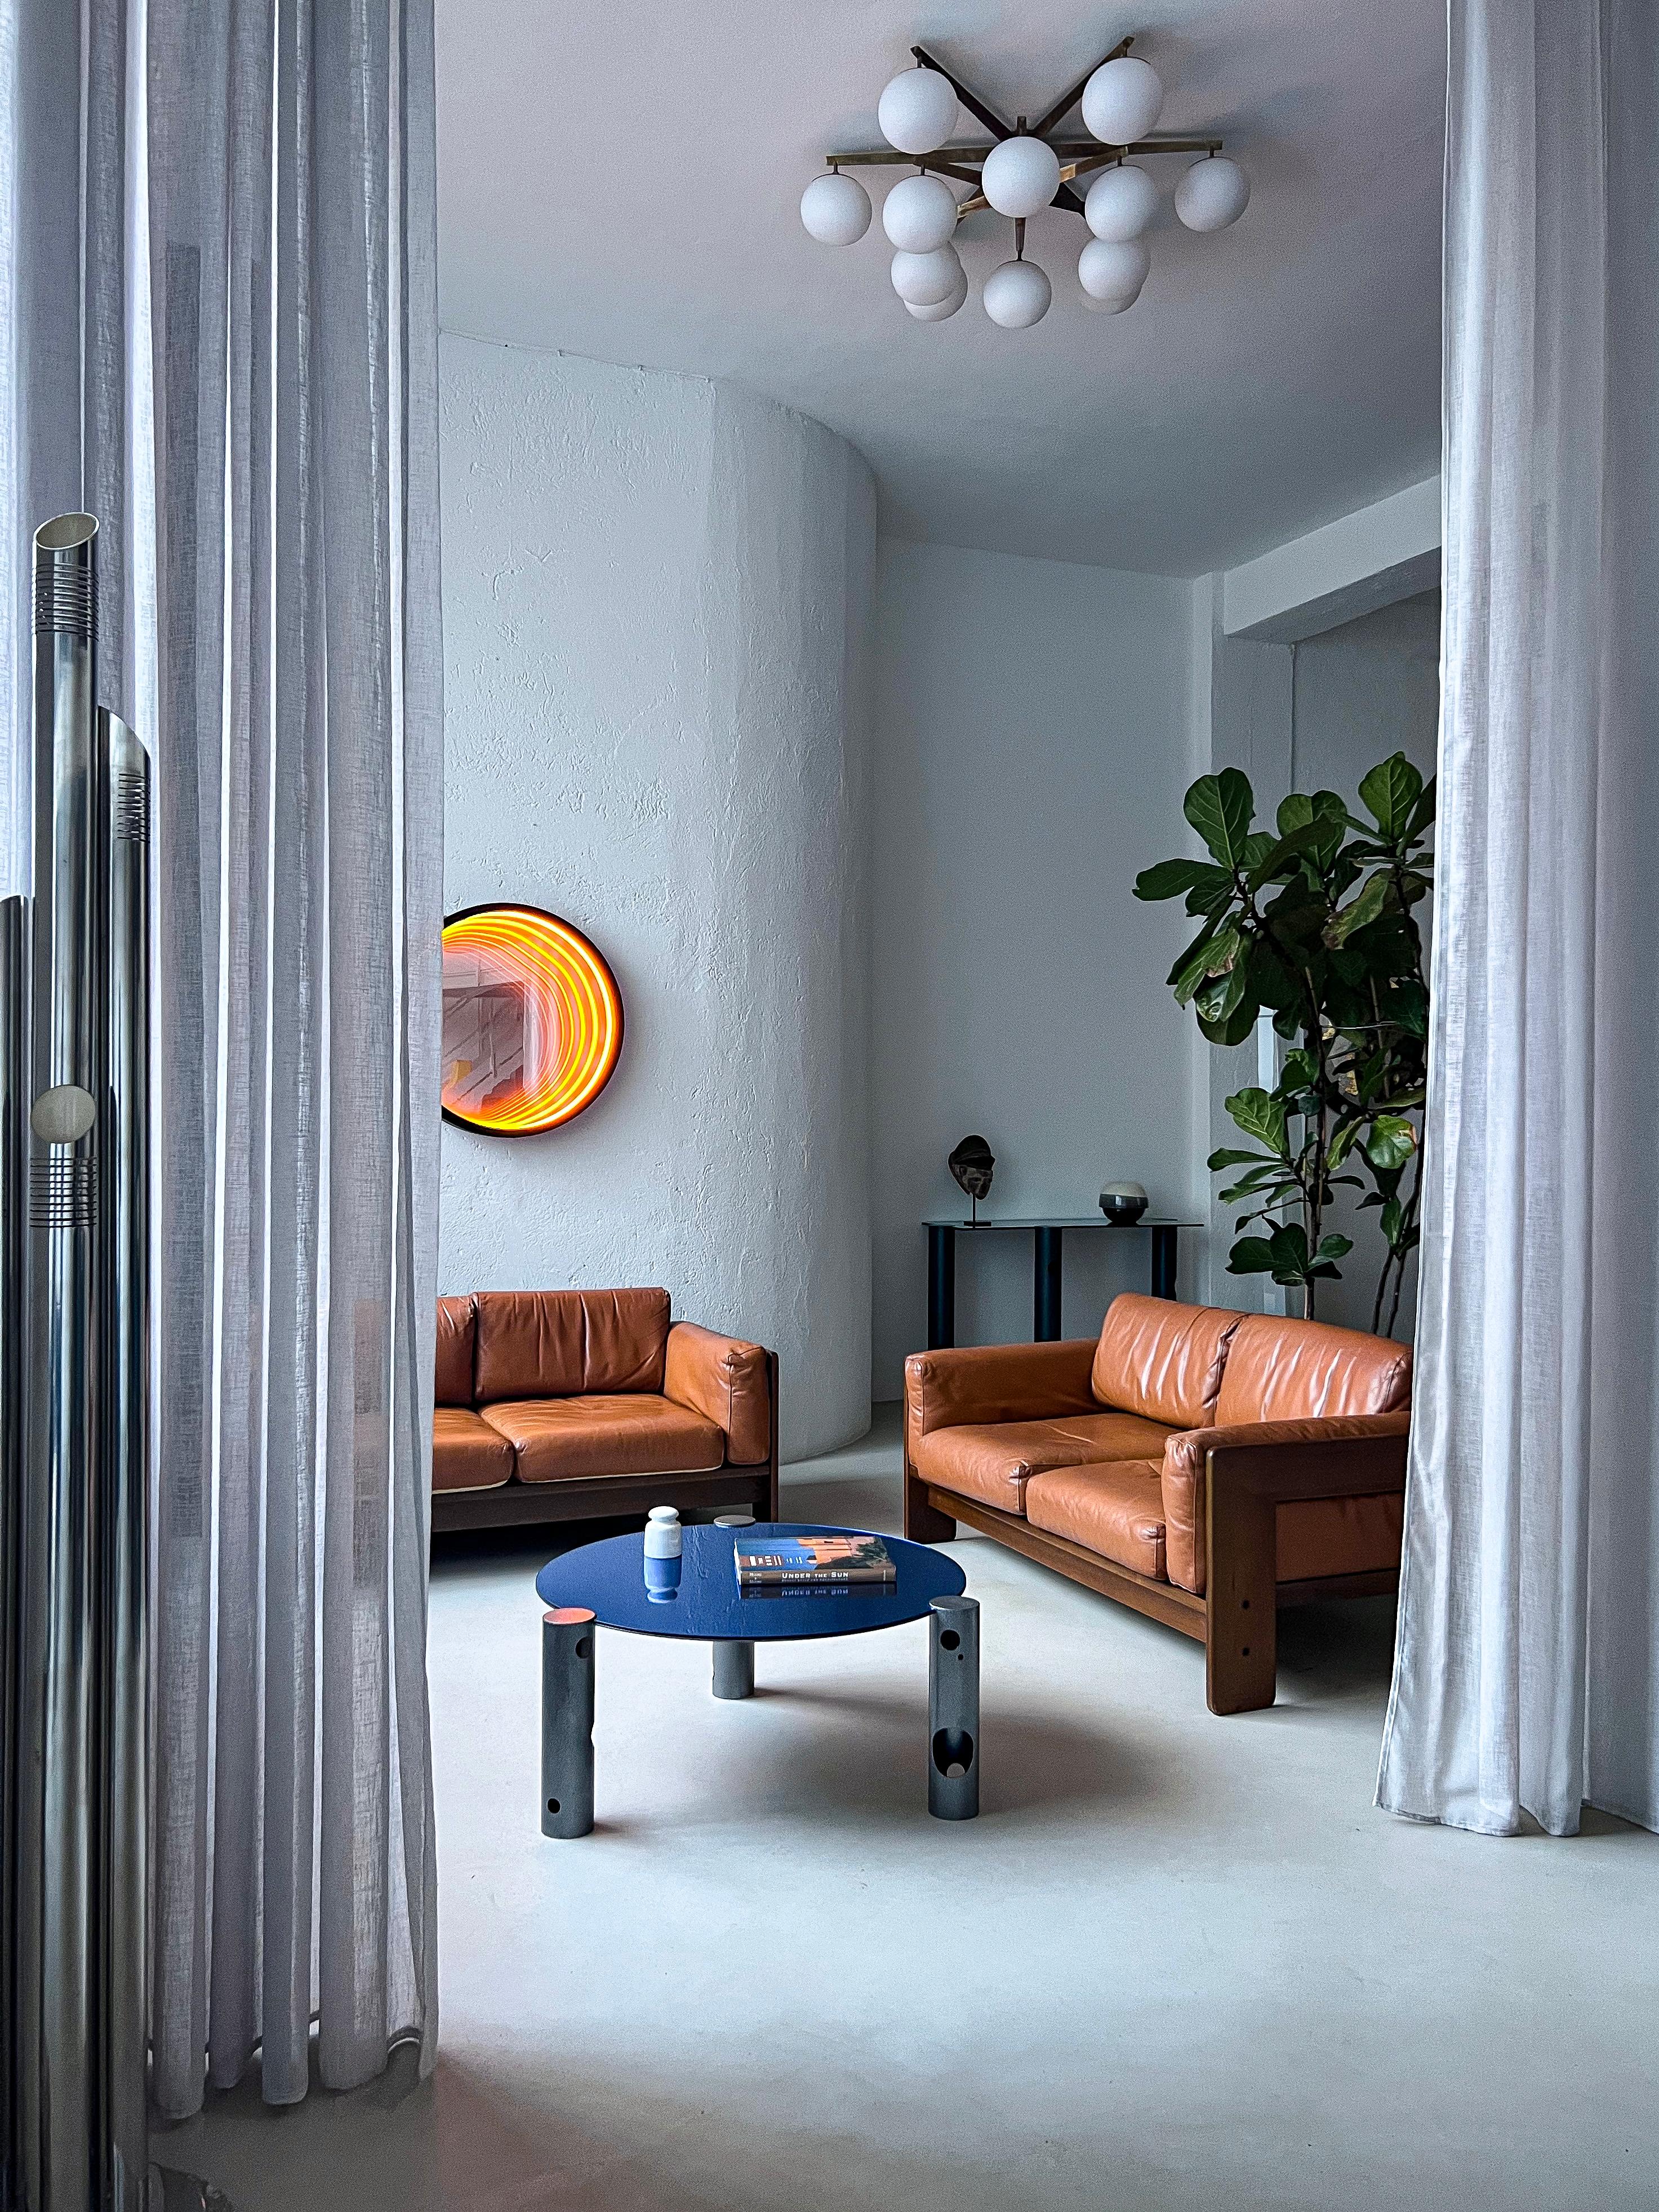 Italian Collectal Design - Tobia Scarpa Sofa - Vintage Leder Bastiano Sofa

Bastiano wurde 1962 von Afra und Tobia Scarpa entworfen und ist ein skulpturales Sofa, das die Designphilosophie des Paares zum Ausdruck bringt. Die charakteristischen